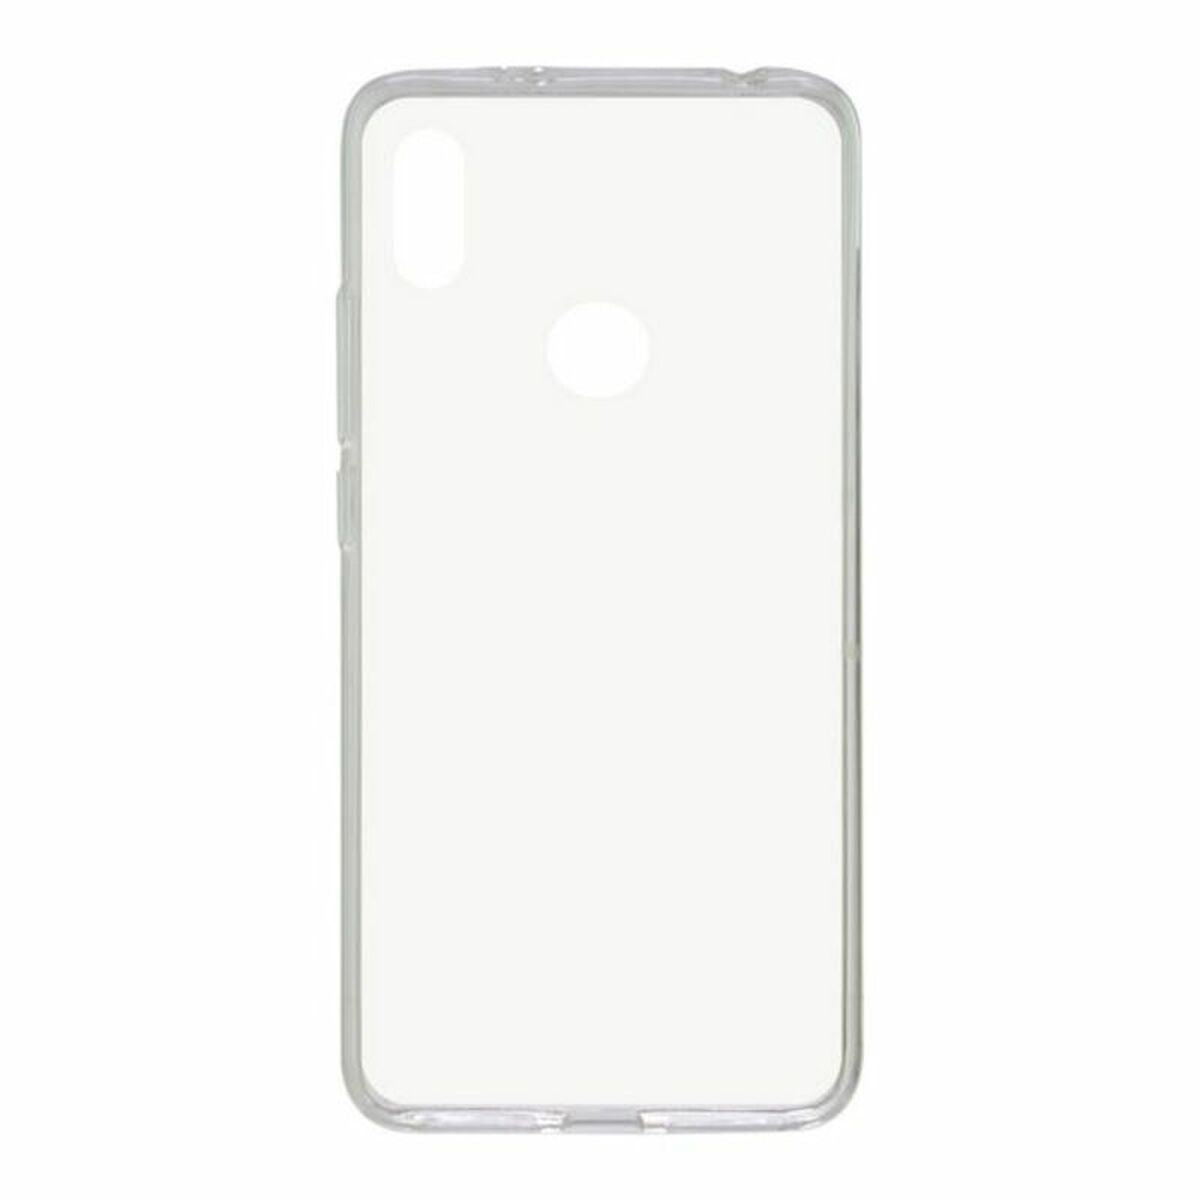 Mobile cover Xiaomi Redmi Note S2 KSIX Flex TPU Transparent